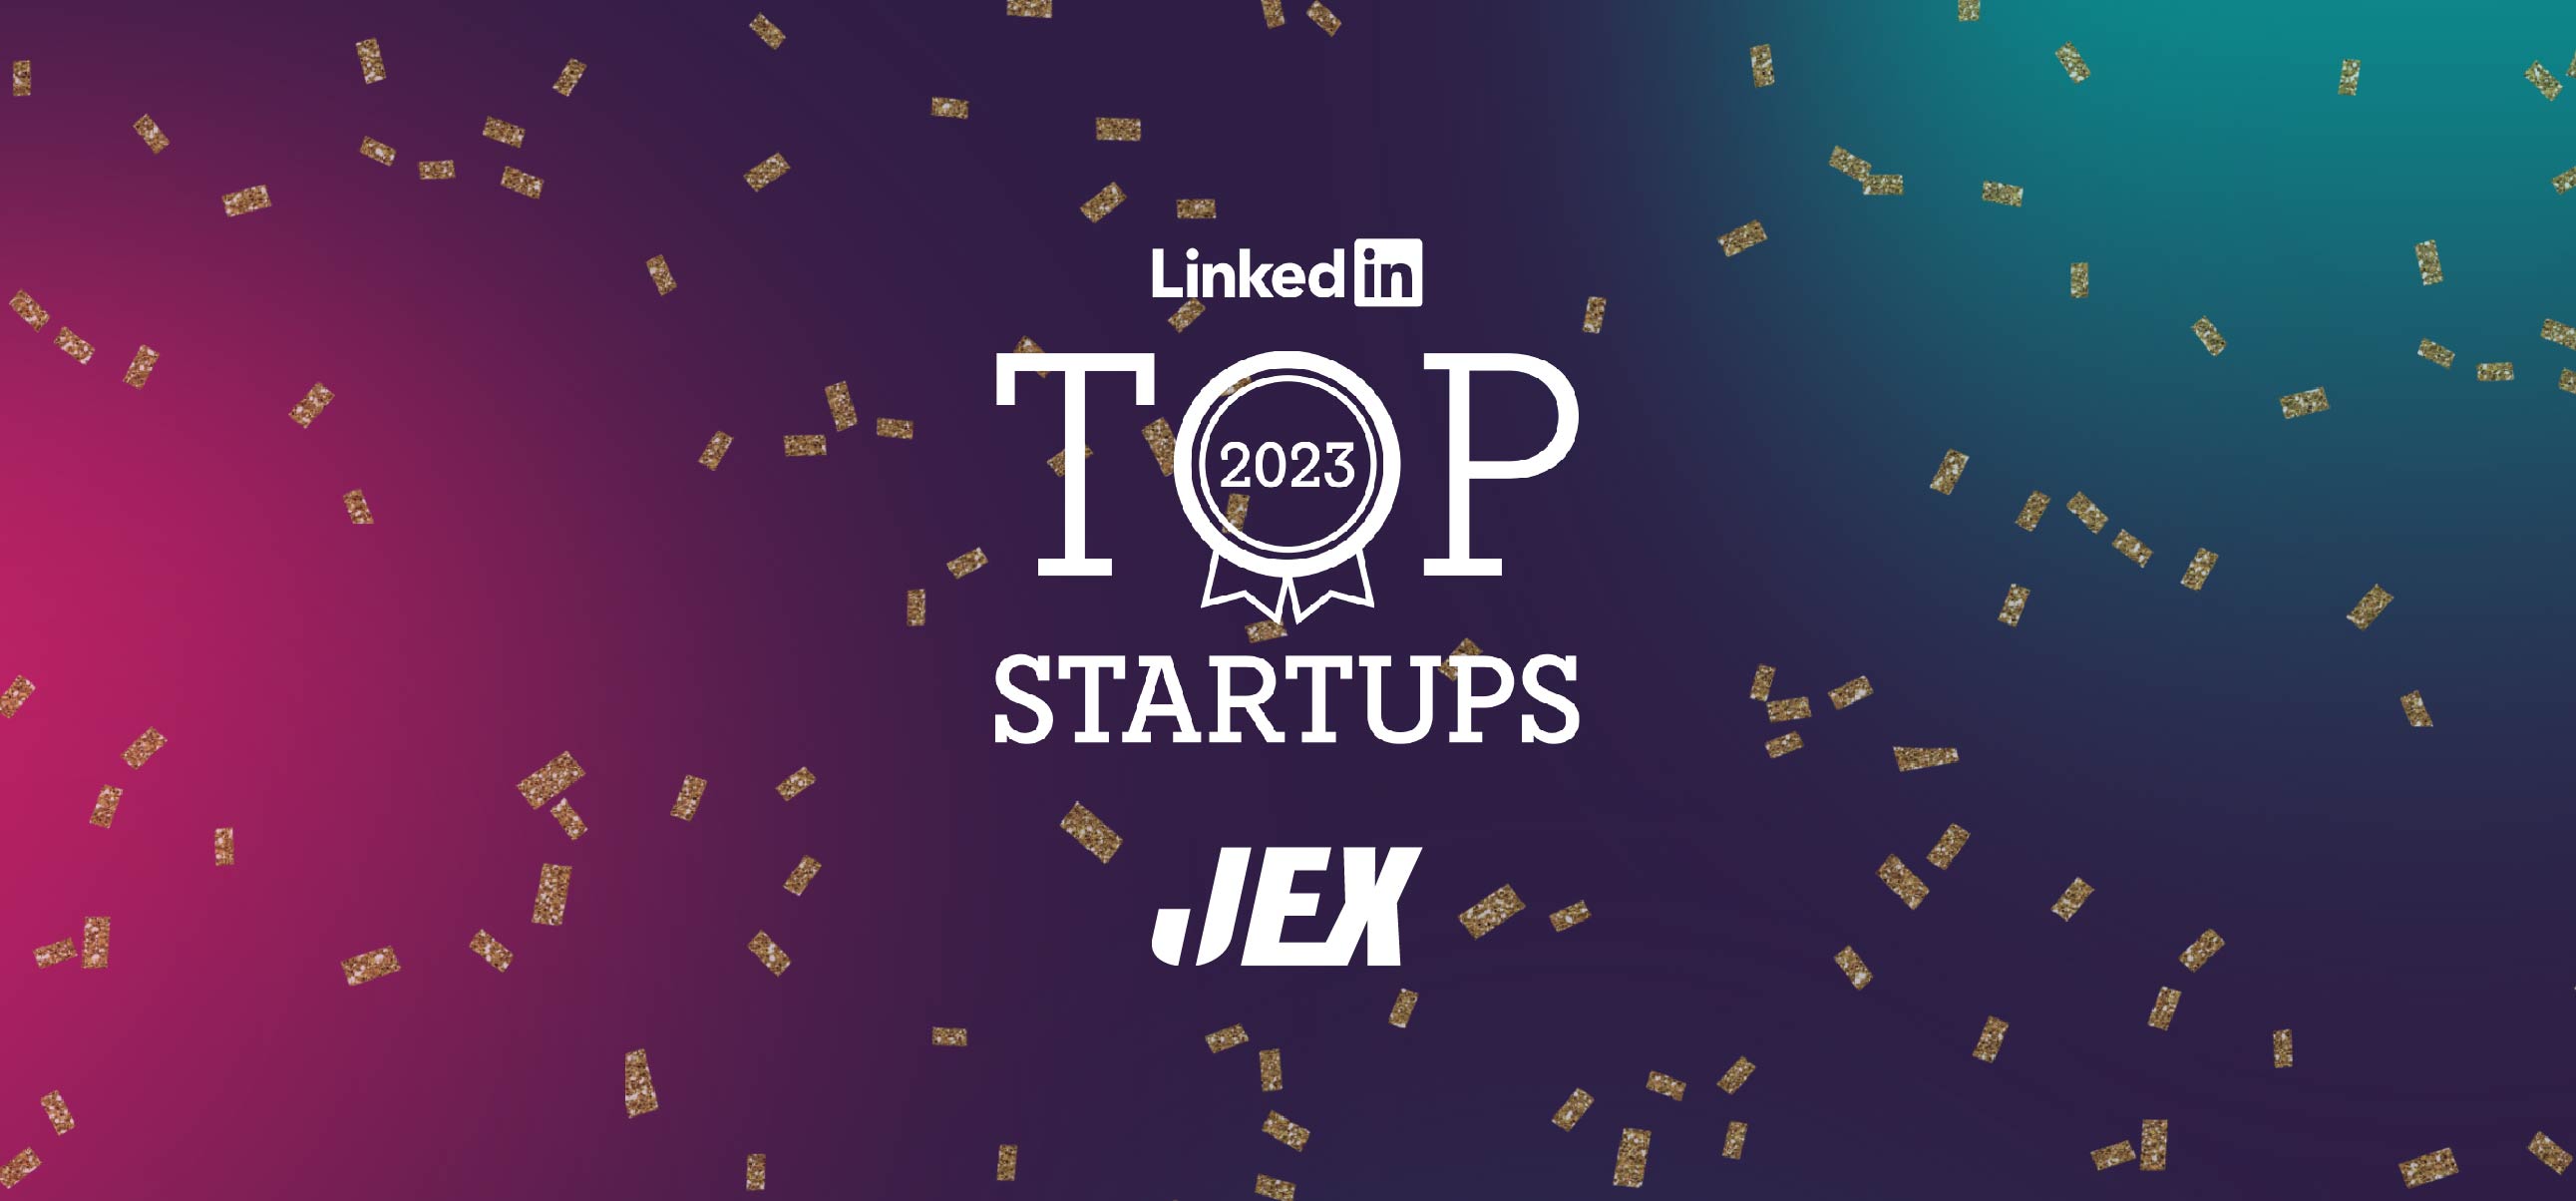 JEX gestegen naar 2e plek in LinkedIn Top 10 Startups 2023